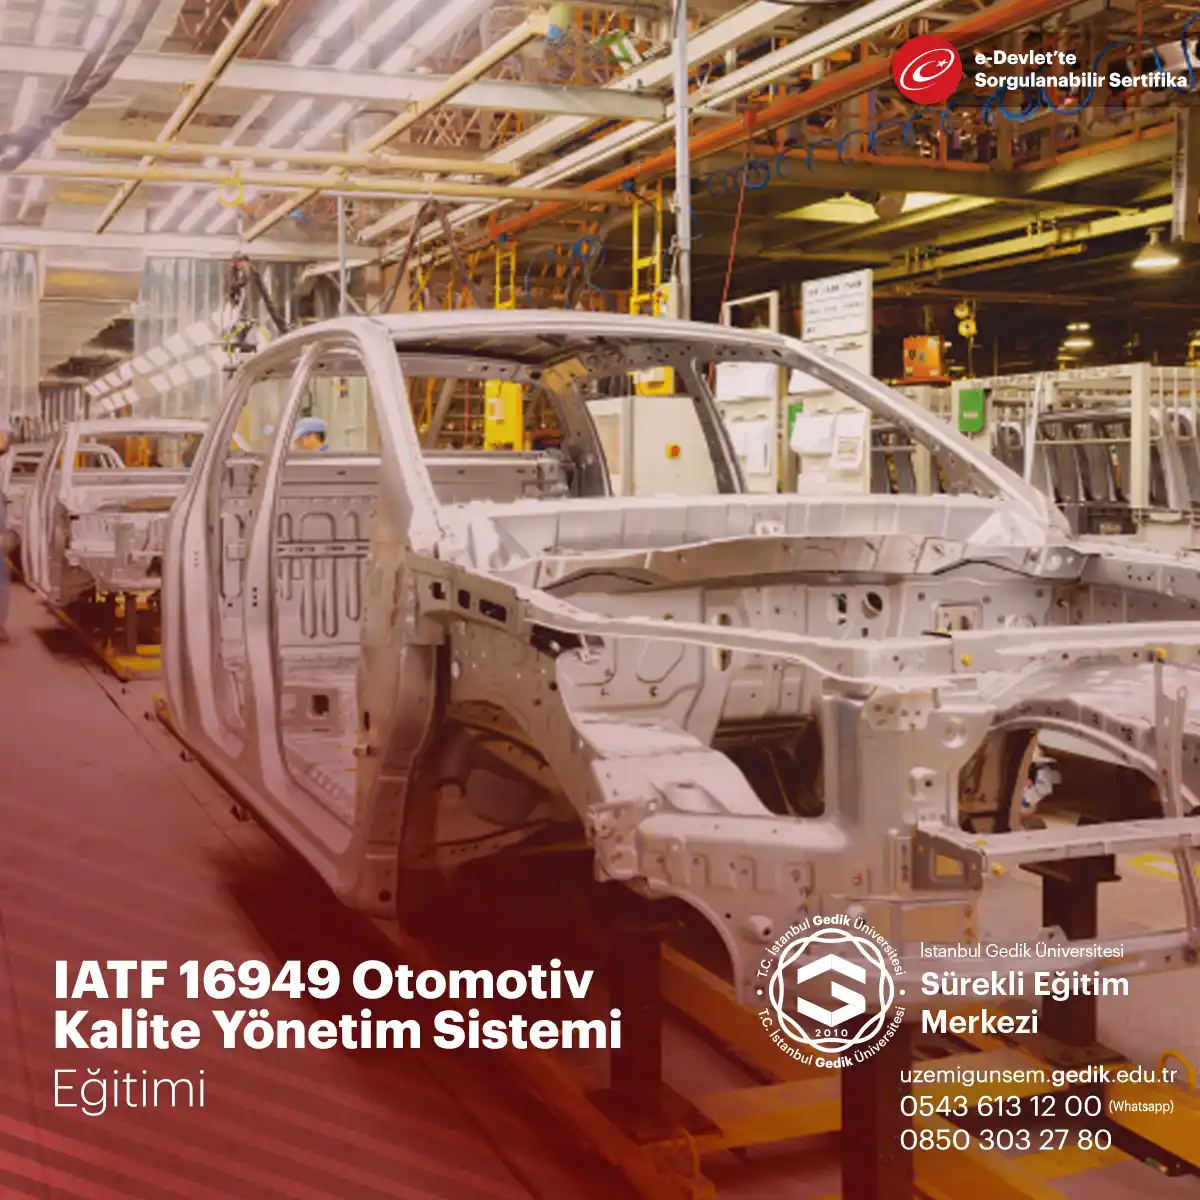 IATF 16949 otomotiv ile ilgili ürünlerin dizaynı / Ar-Ge süreçleri, üretimi, montajı ve hazır hale getirilmesi için gerekli olan Kalite Sistemlerini içerisinde barındırmaktadır.